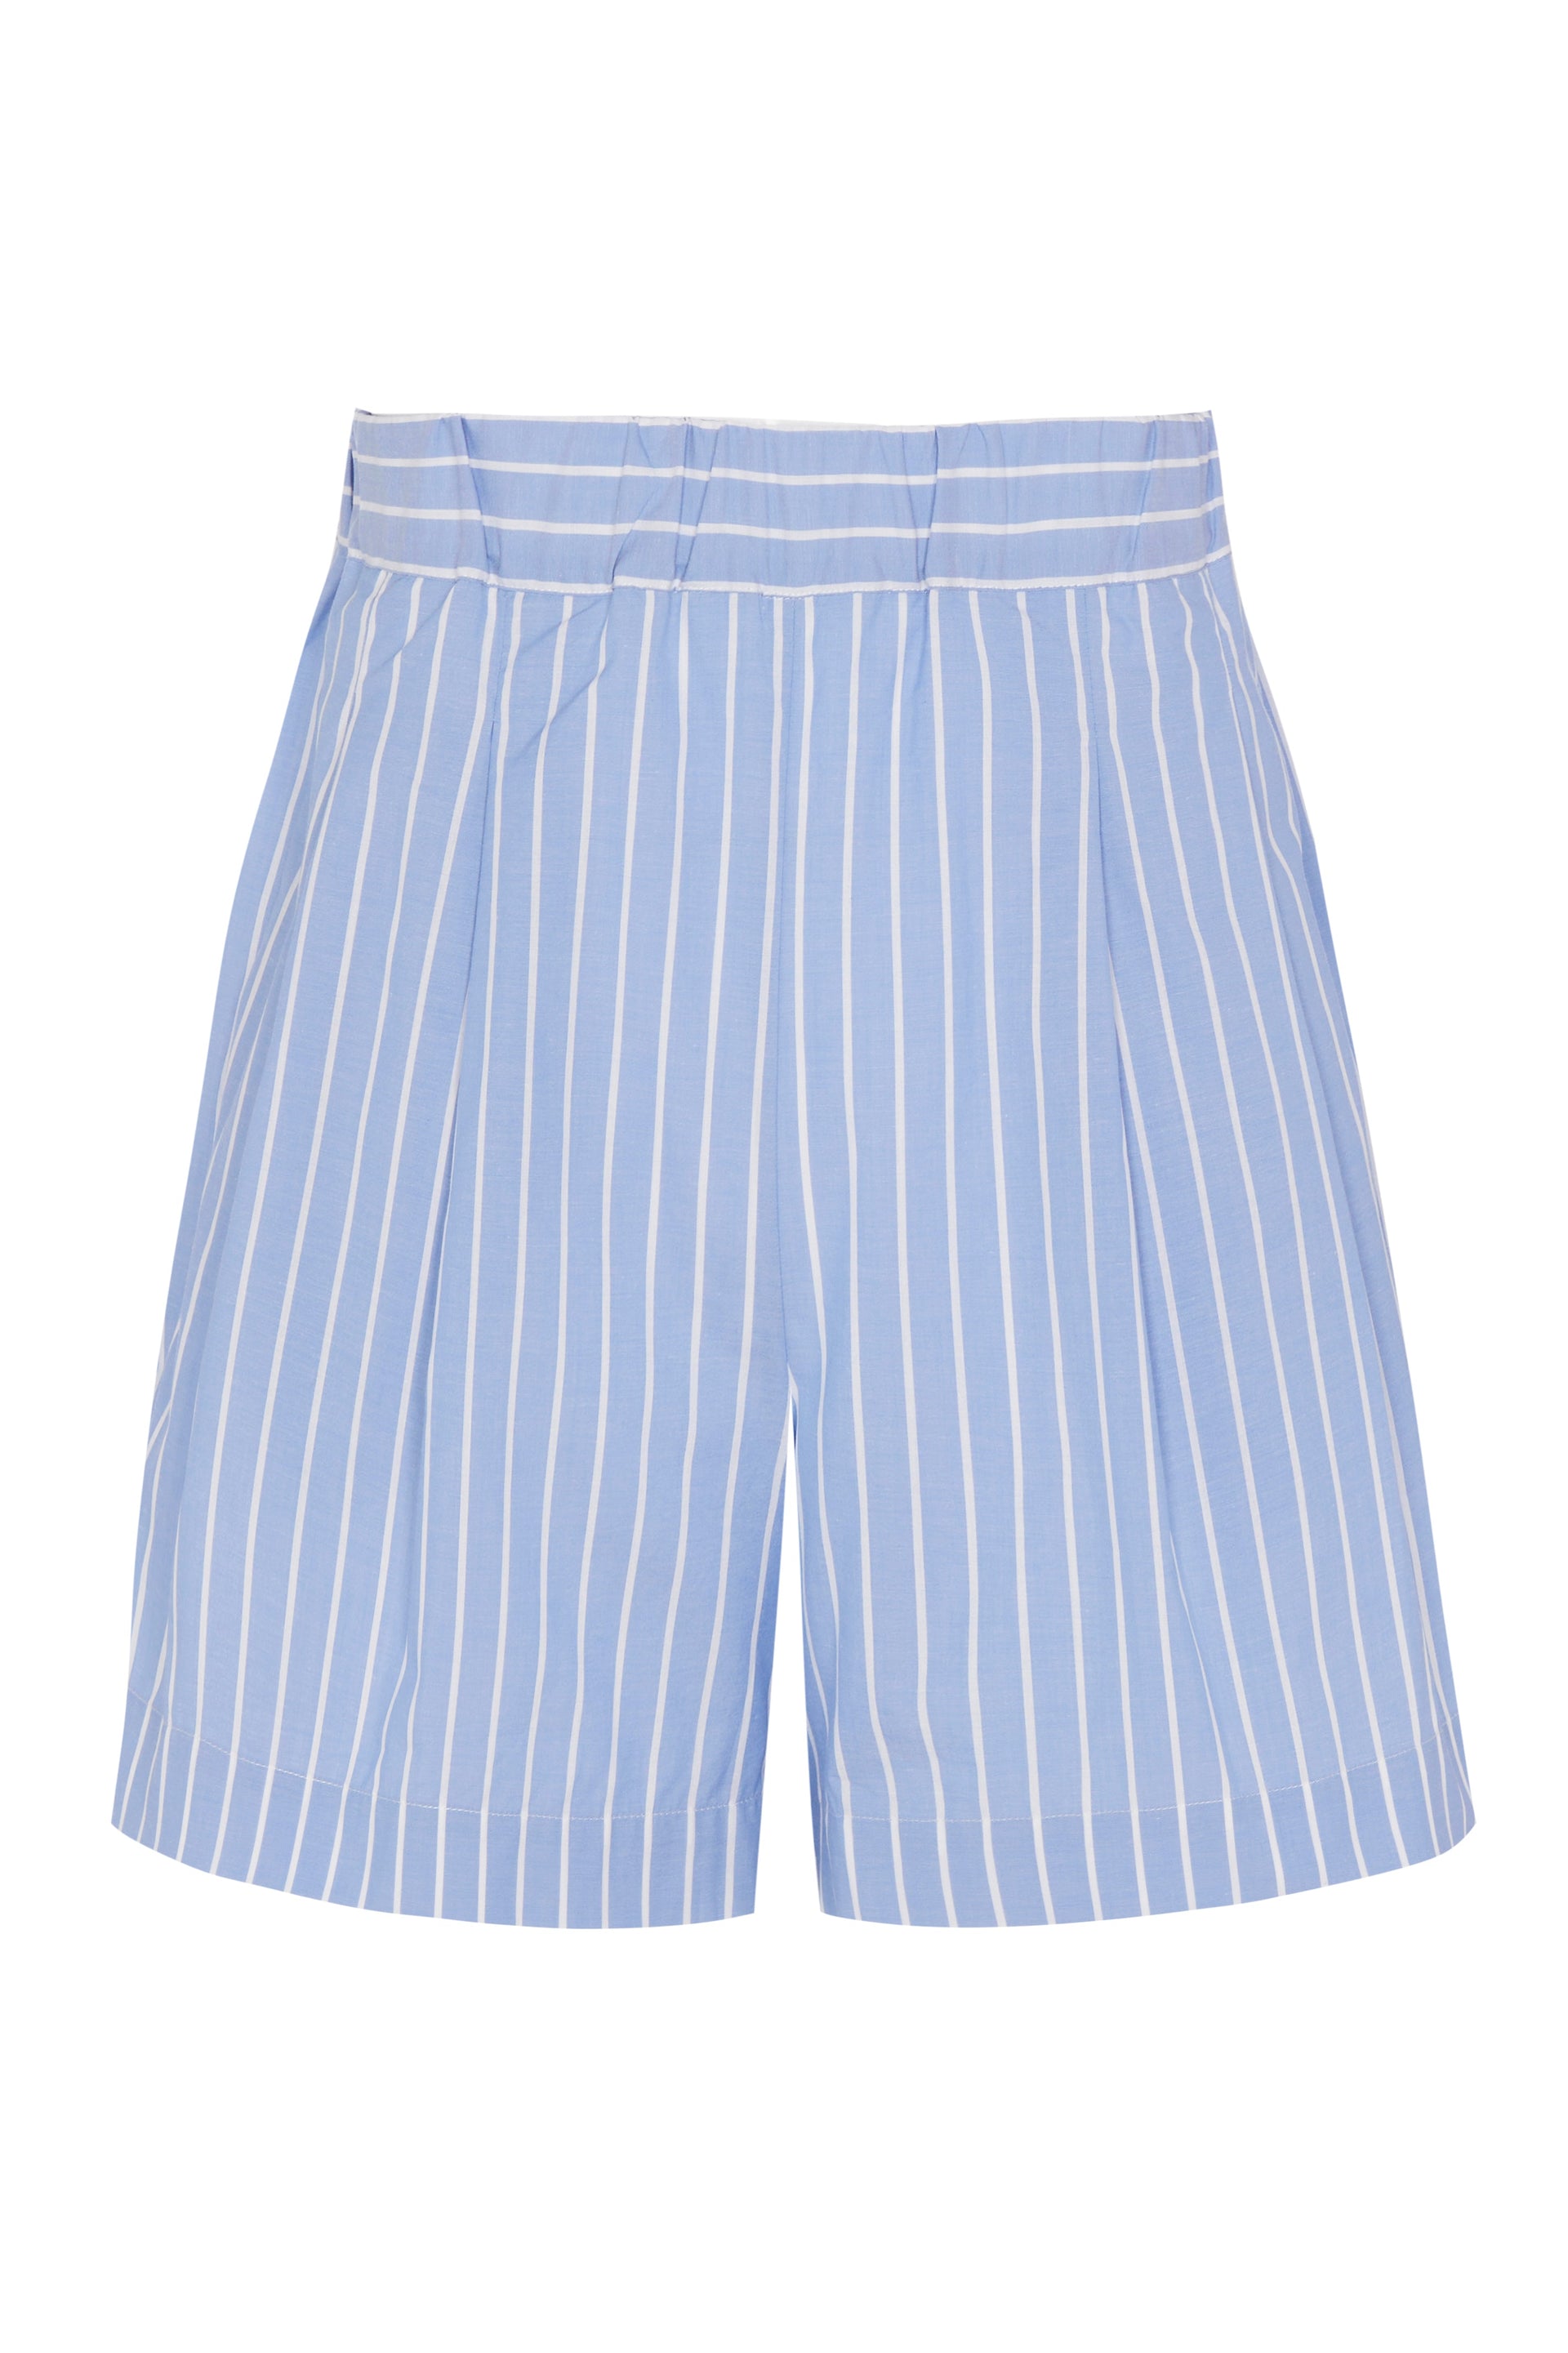 Zurich Short Blue & White Stripe Cotton Silk